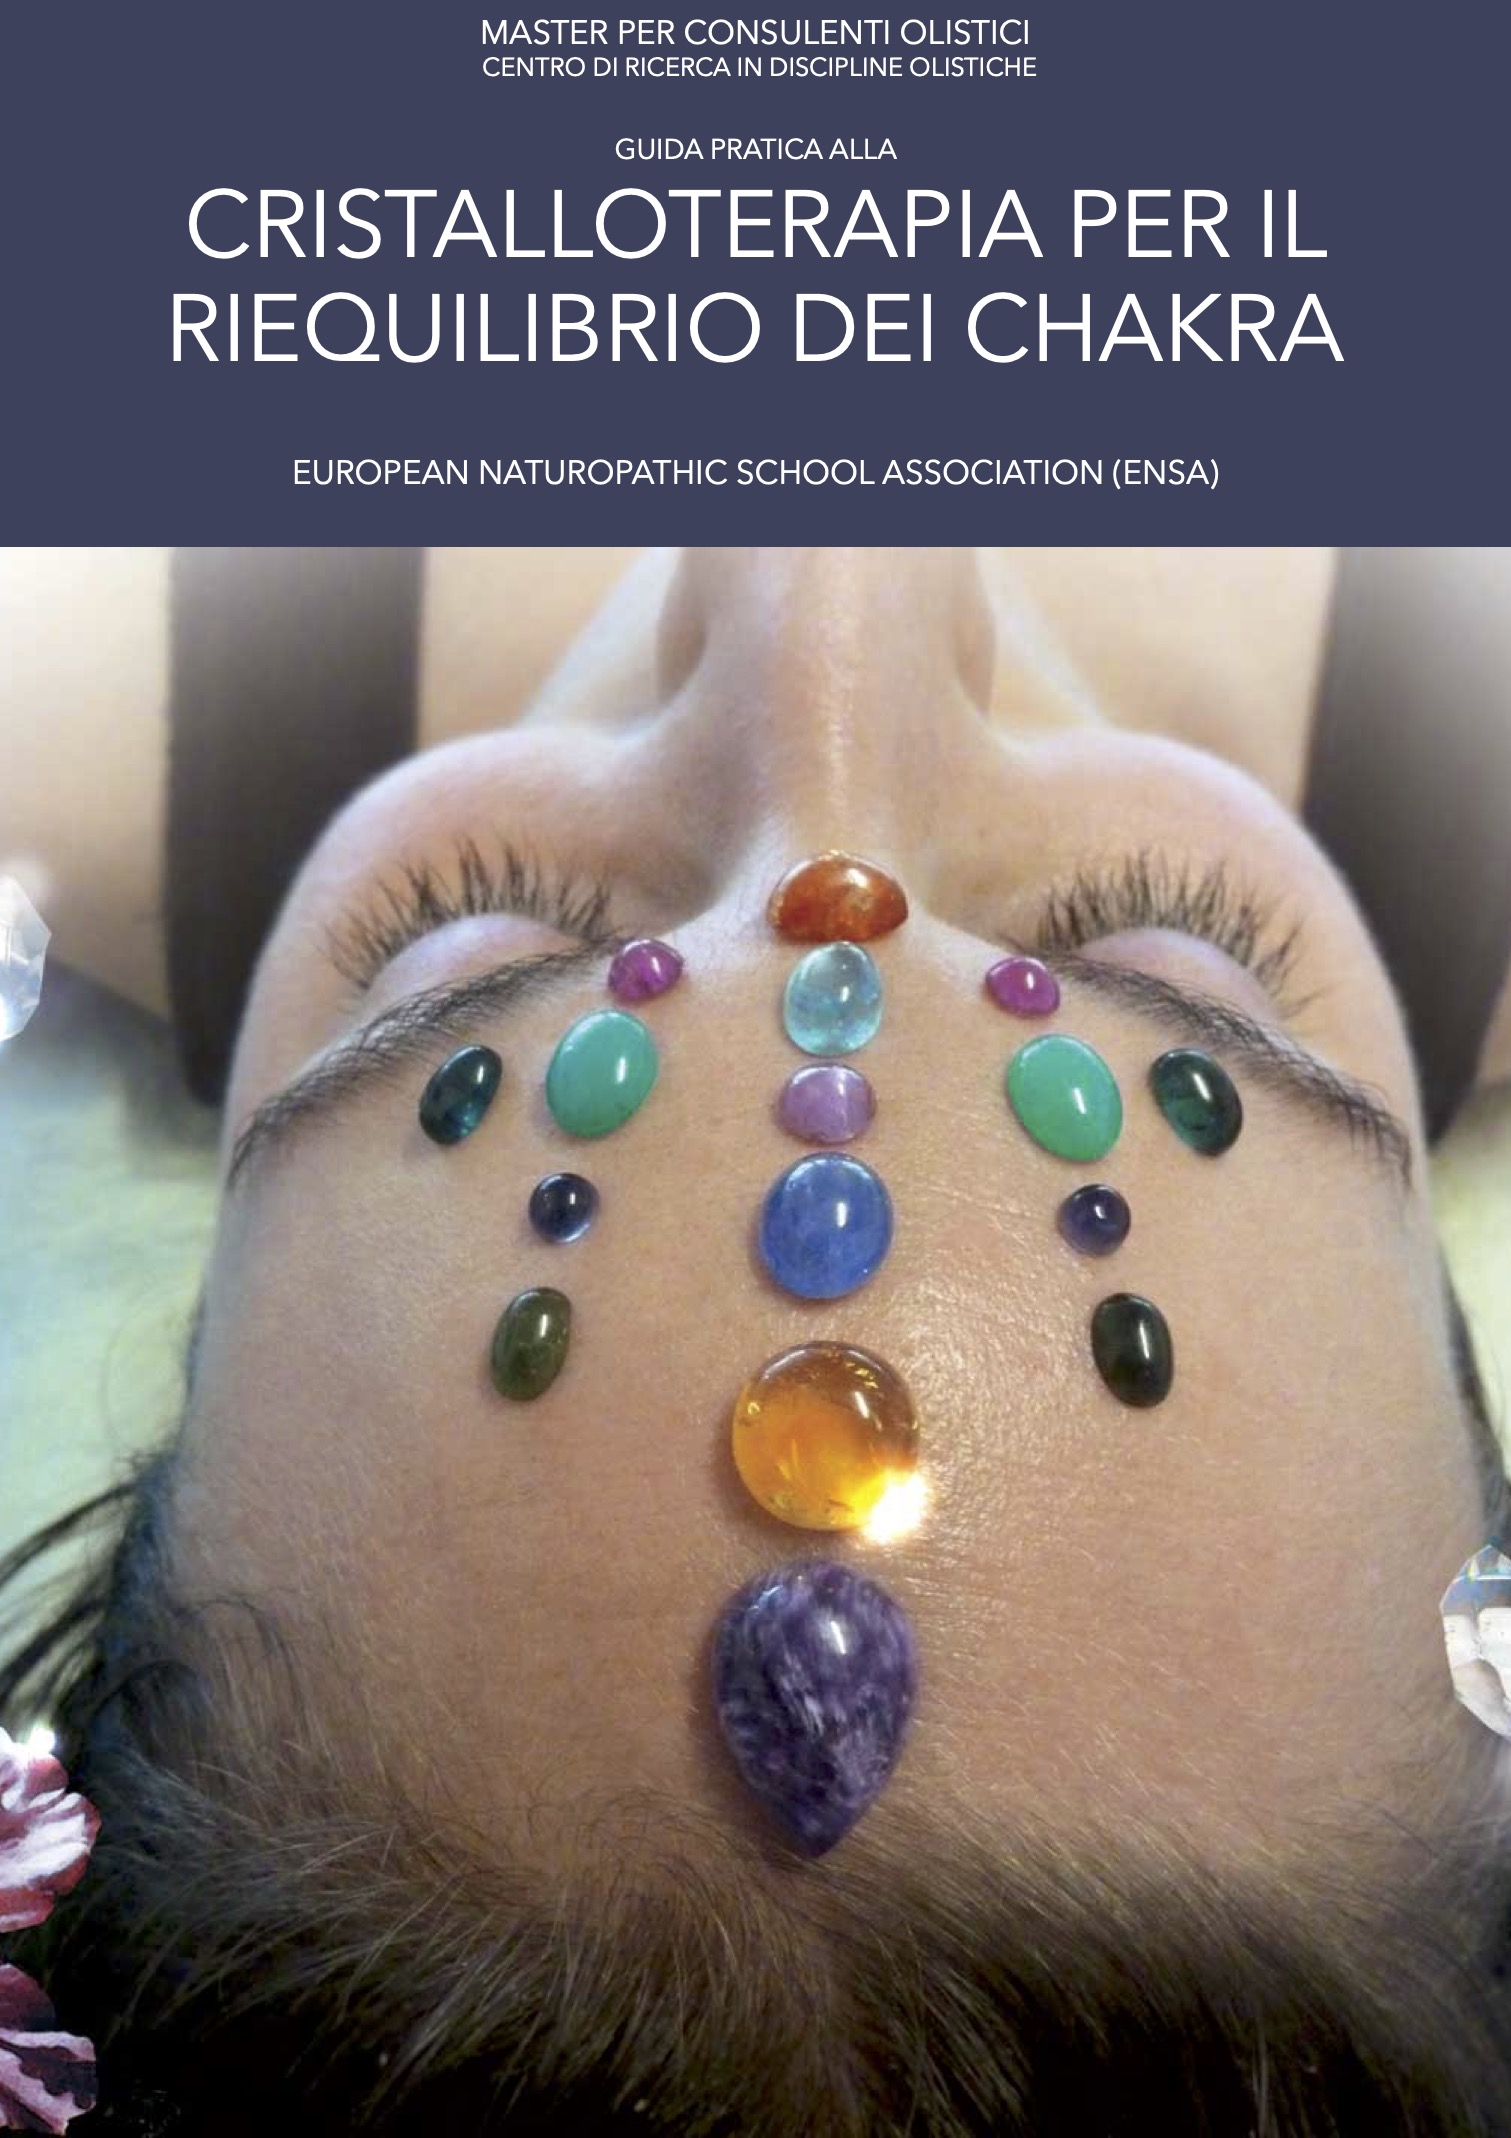 Guida pratica alla cristalloterapia per il riequilibrio dei chakra